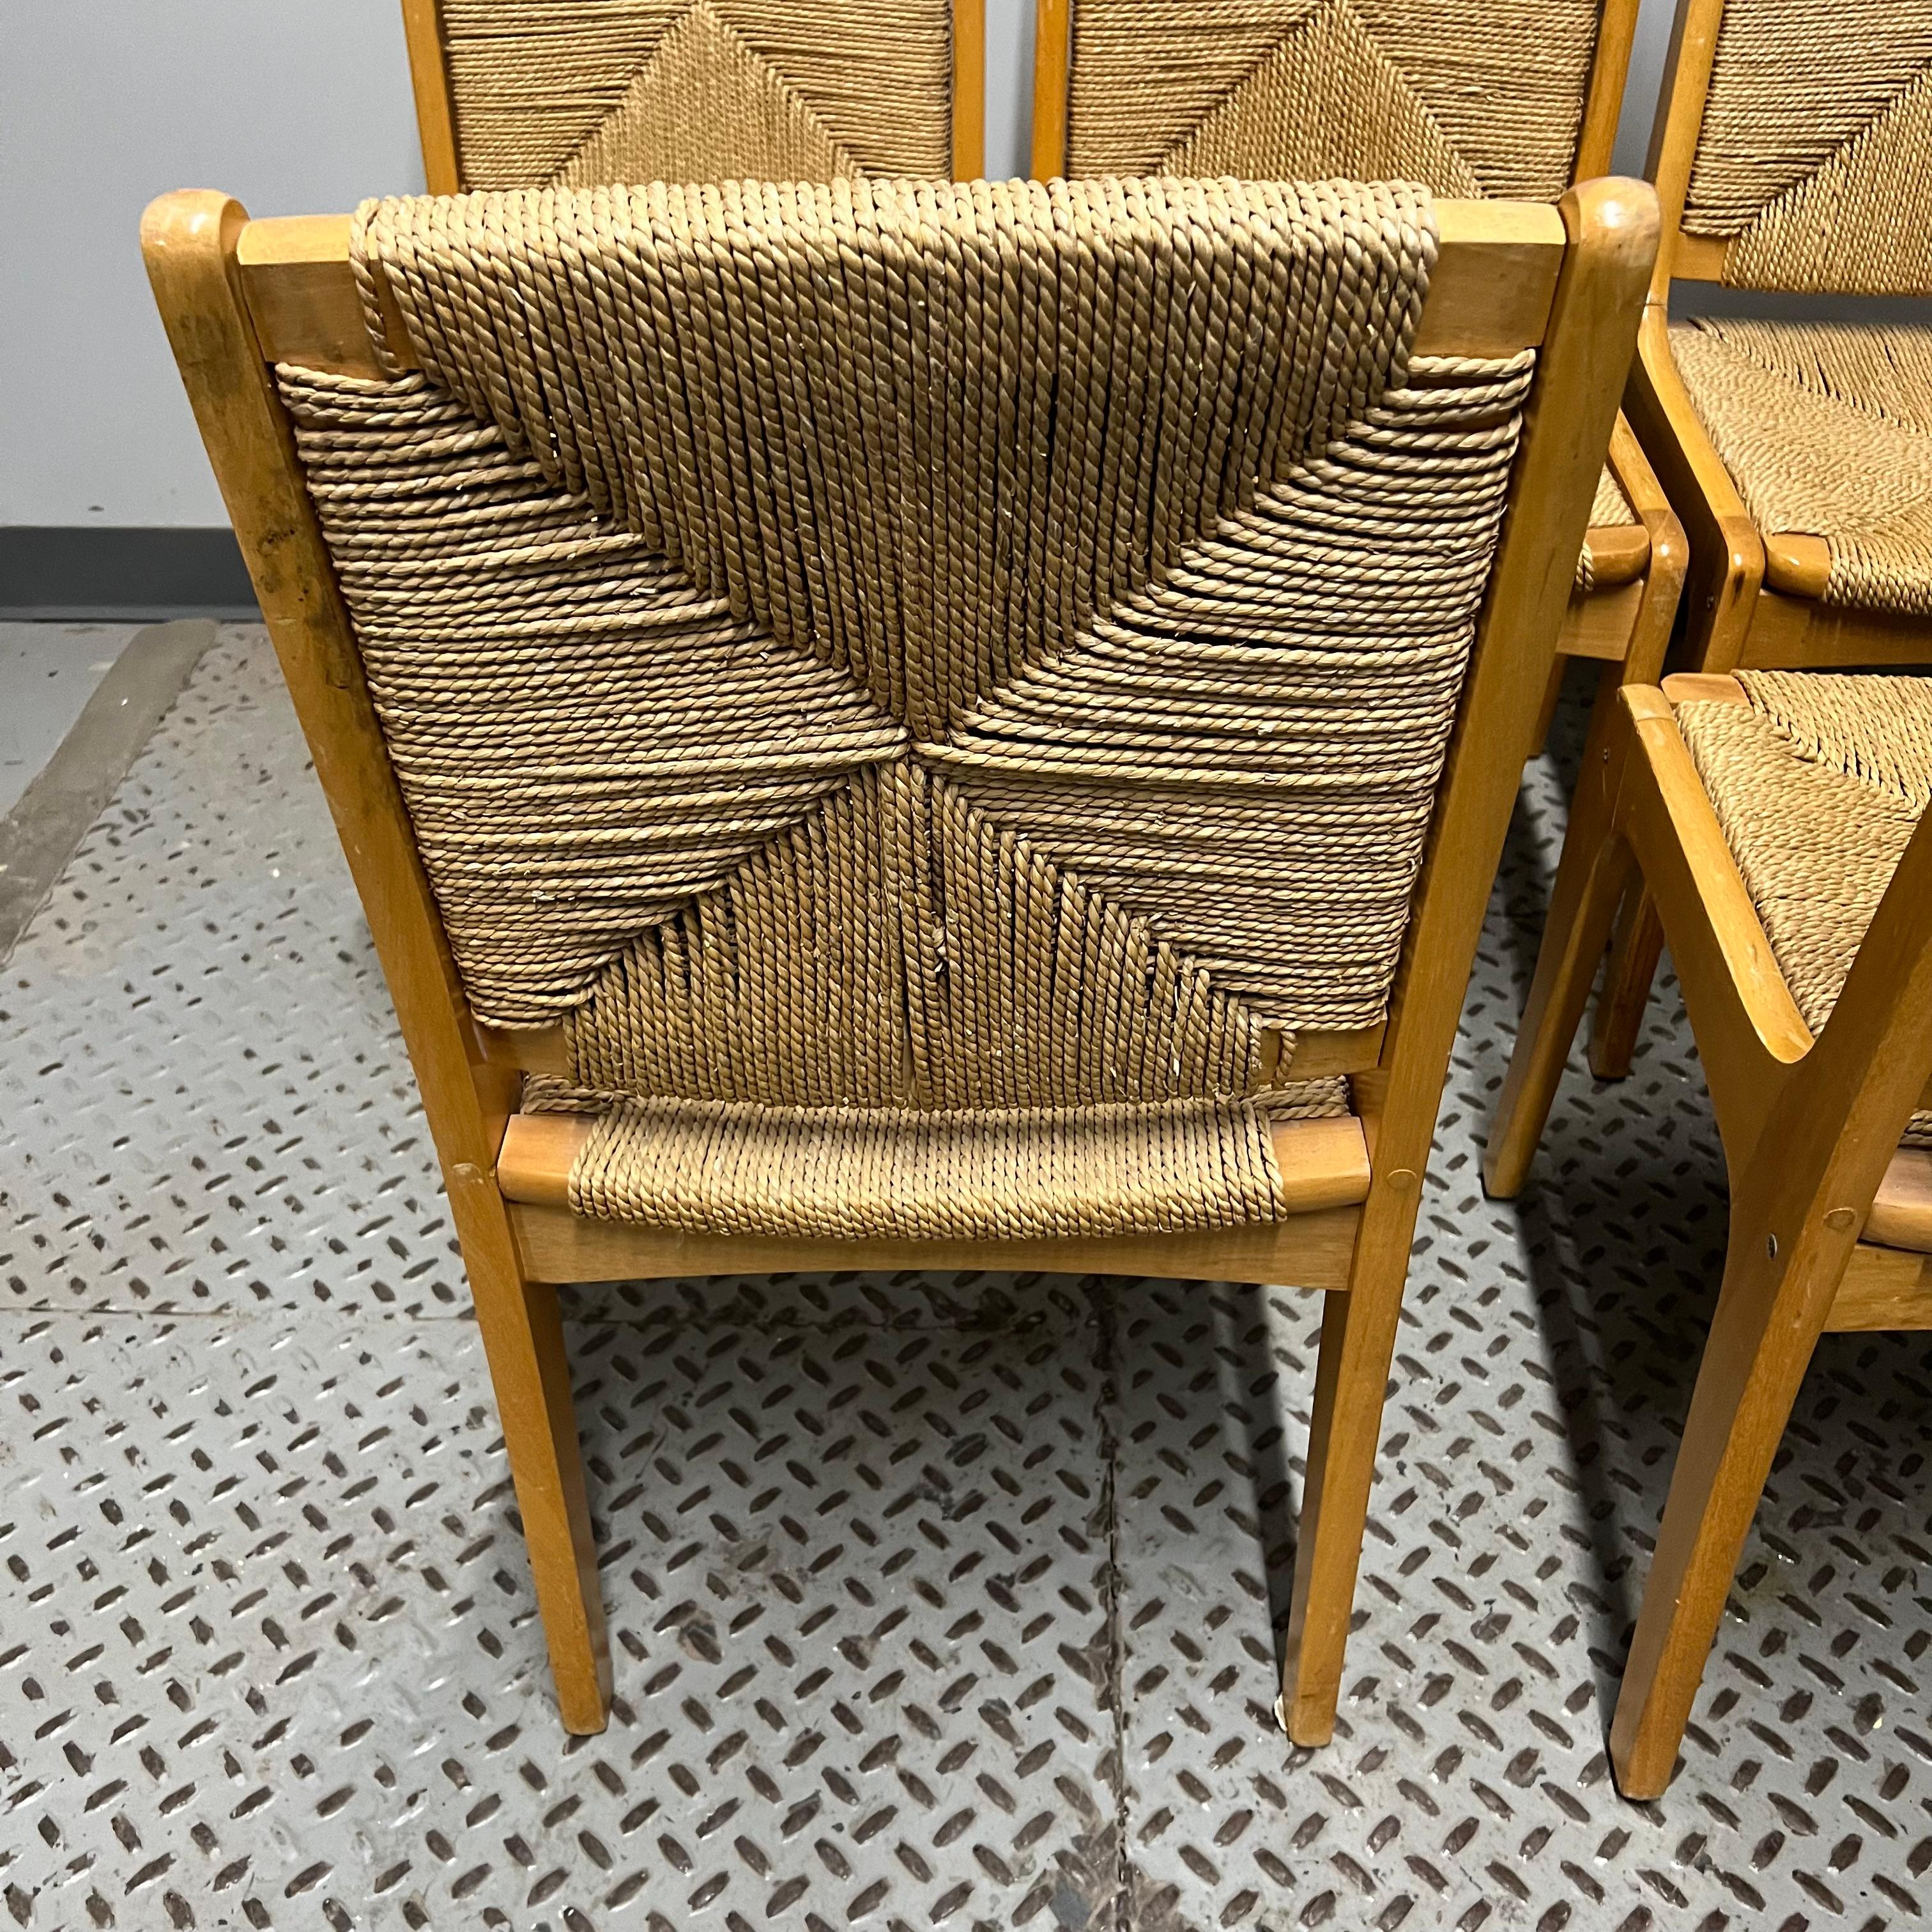 Ces chaises de salle à manger ont une structure en chêne et des assises et dossiers en jonc tressé.  Elles présentent une légère similitude avec les chaises conçues par Charlotte Perriand ou Vico Magistretti.  Ils ne sont pas marqués.  Ils ont été